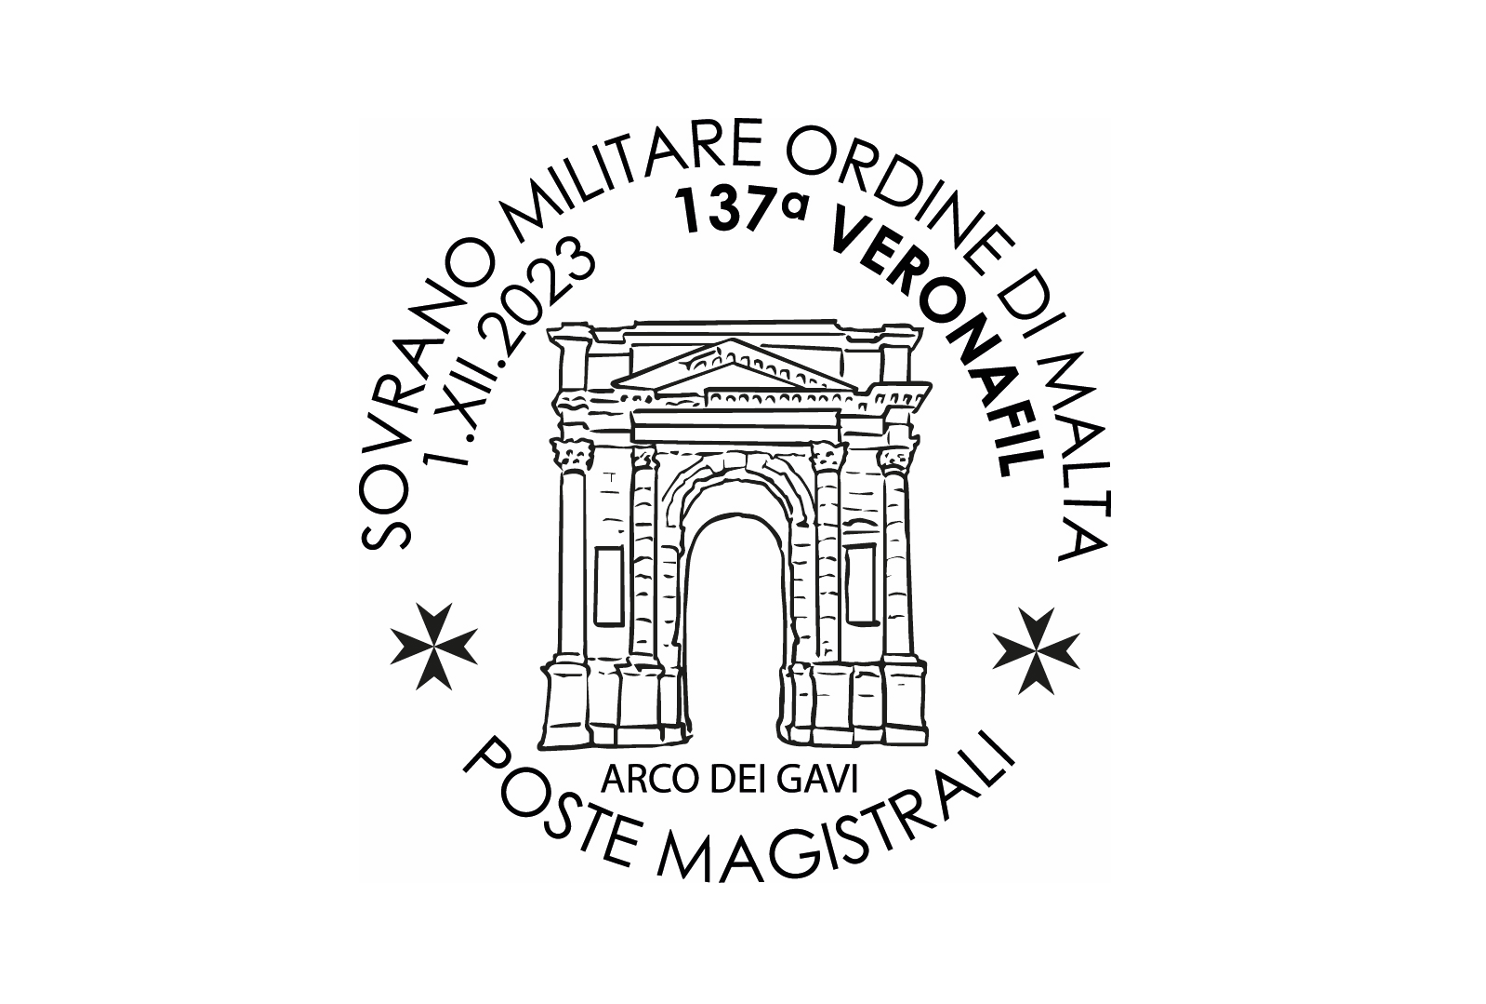 Poste Magistrali in Verona